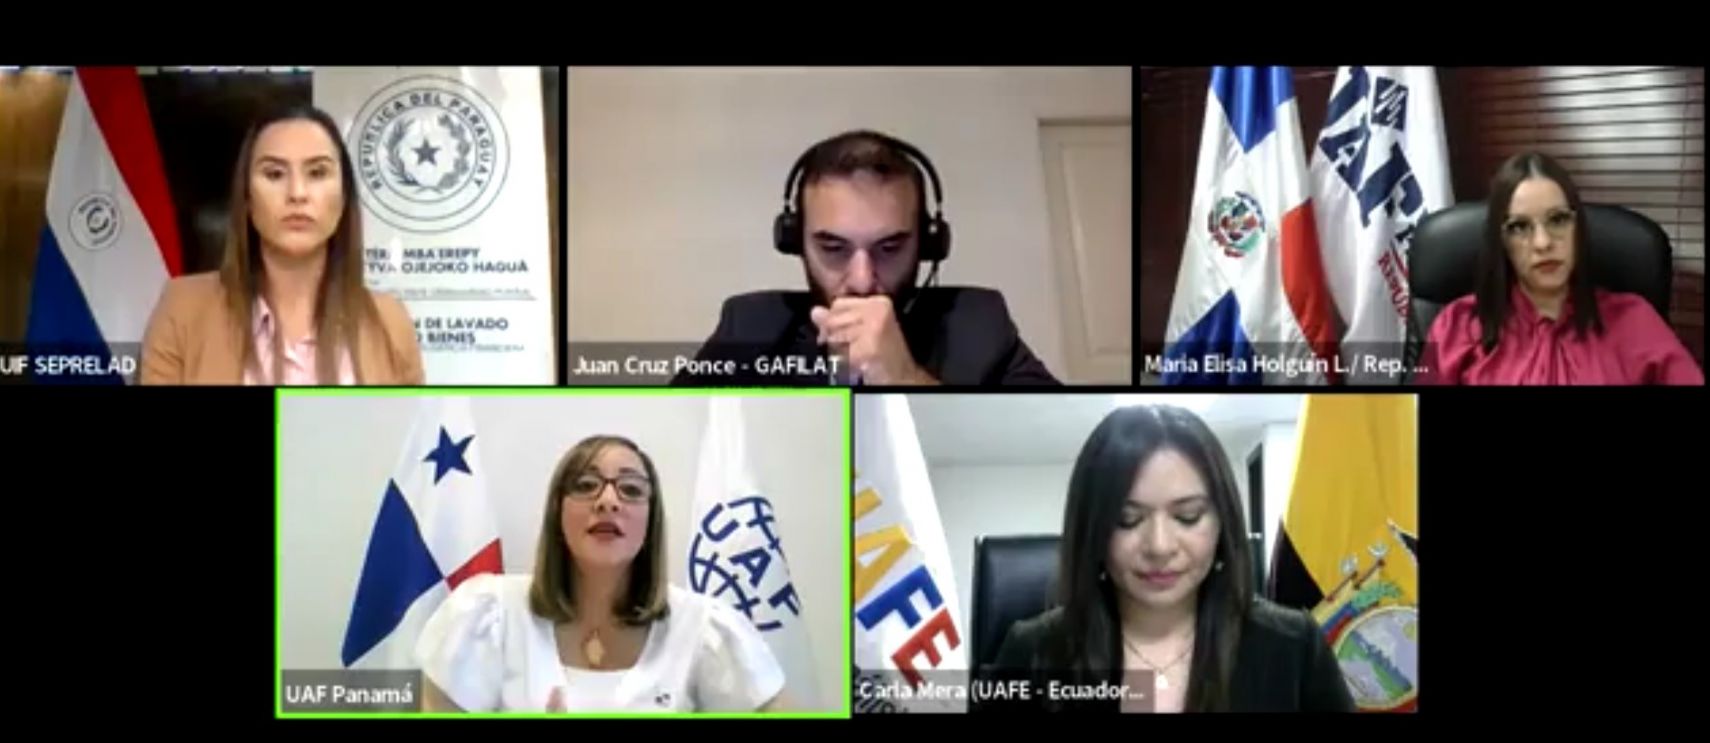 SEPRELAD junto a la UAFE Ecuador, UAF República Dominicana y UAF Panamá realizó con éxito el primer Conversatorio en vivo: “Hablemos de prevención”